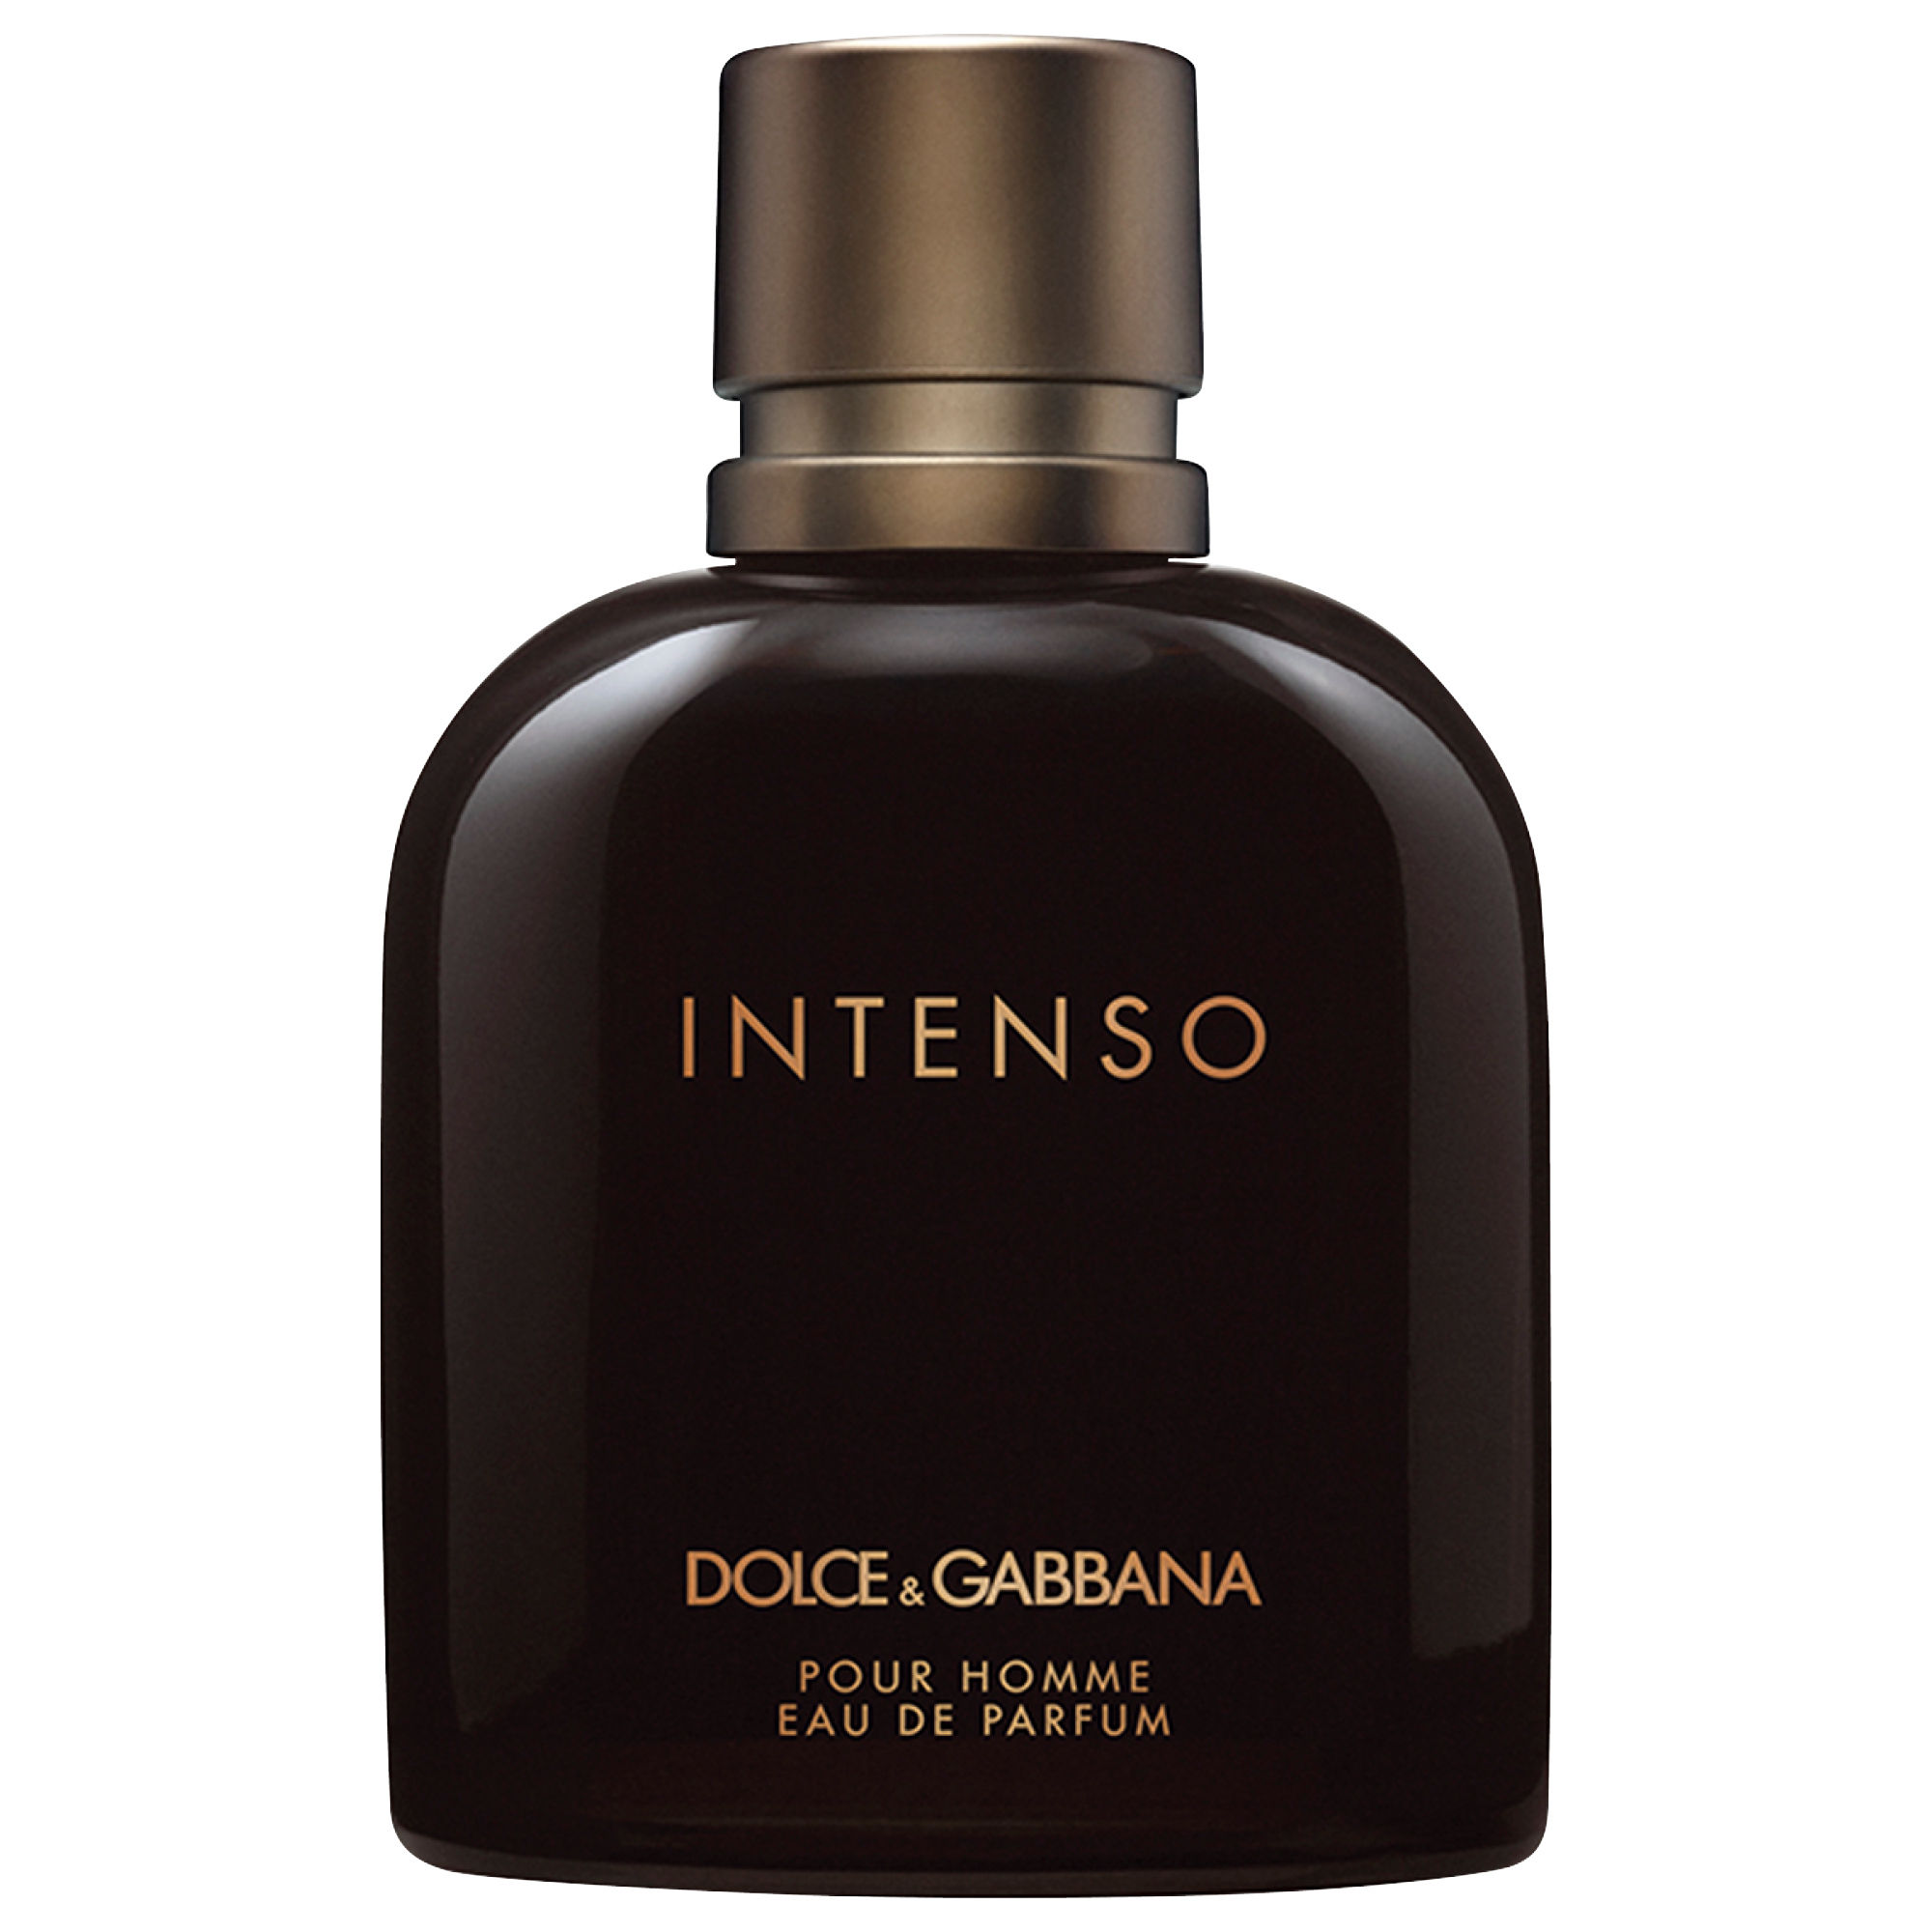 Dolce&Gabbana Intenso Eau de Parfum Spray 125 ml